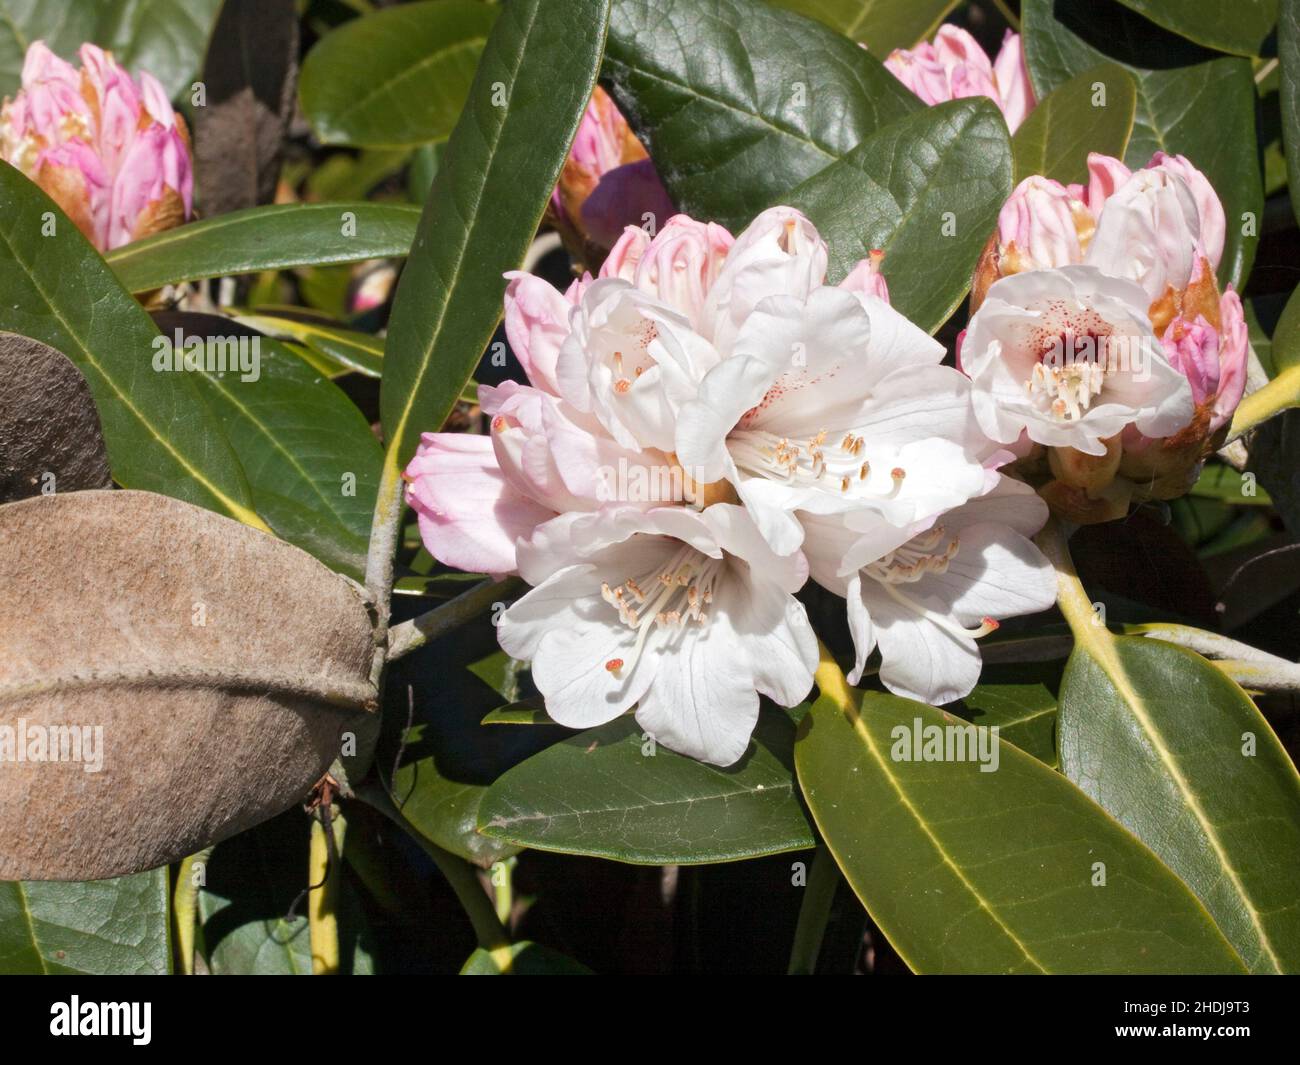 rhododendron, rhododendron rex, rhododendrons Stock Photo